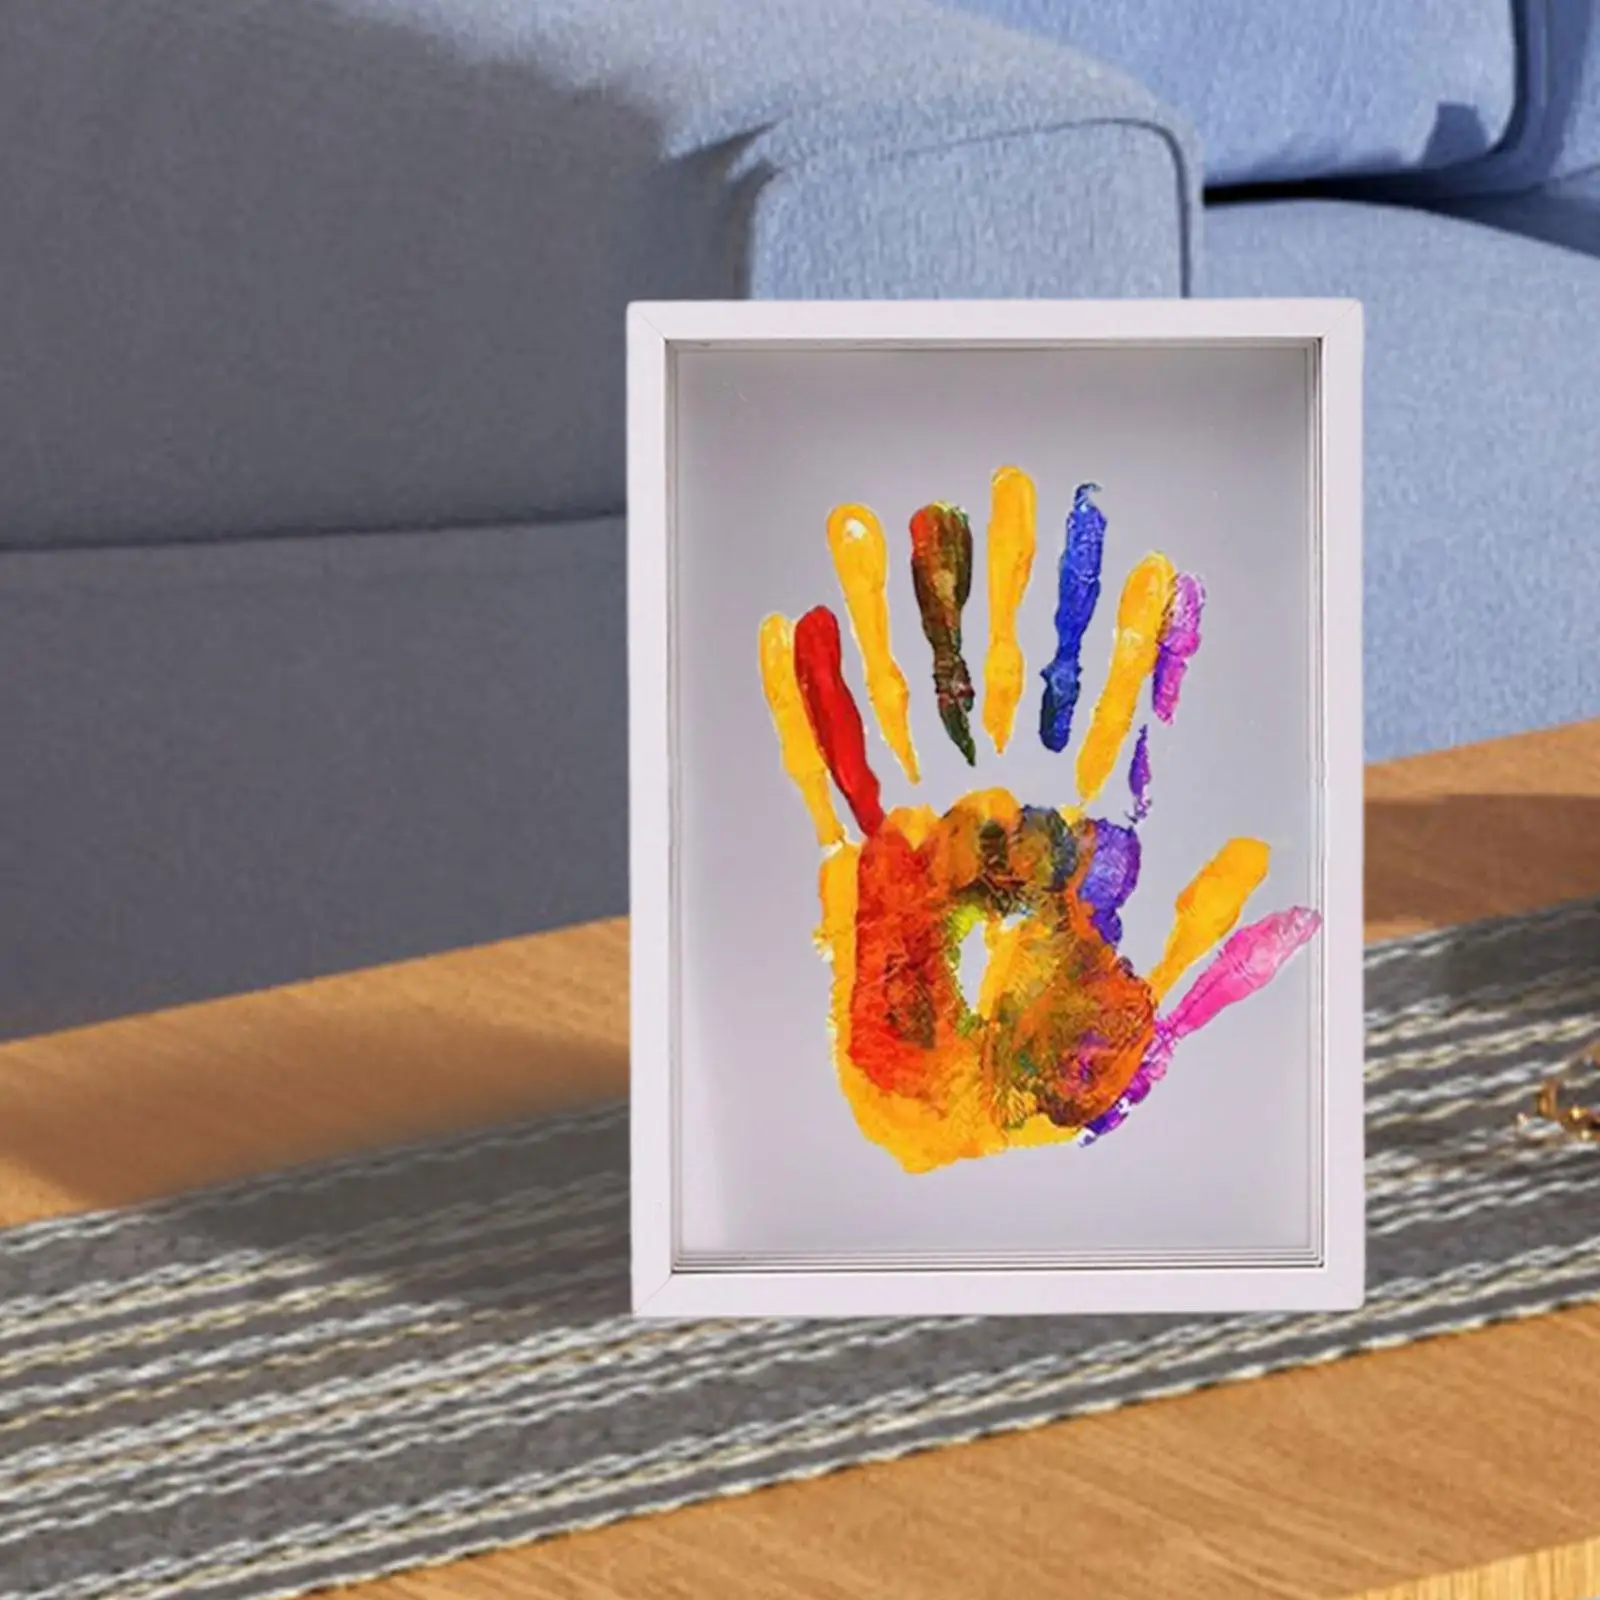 Family Handprint Frame Kit Clear Family Handprint Kit for New Parents Family